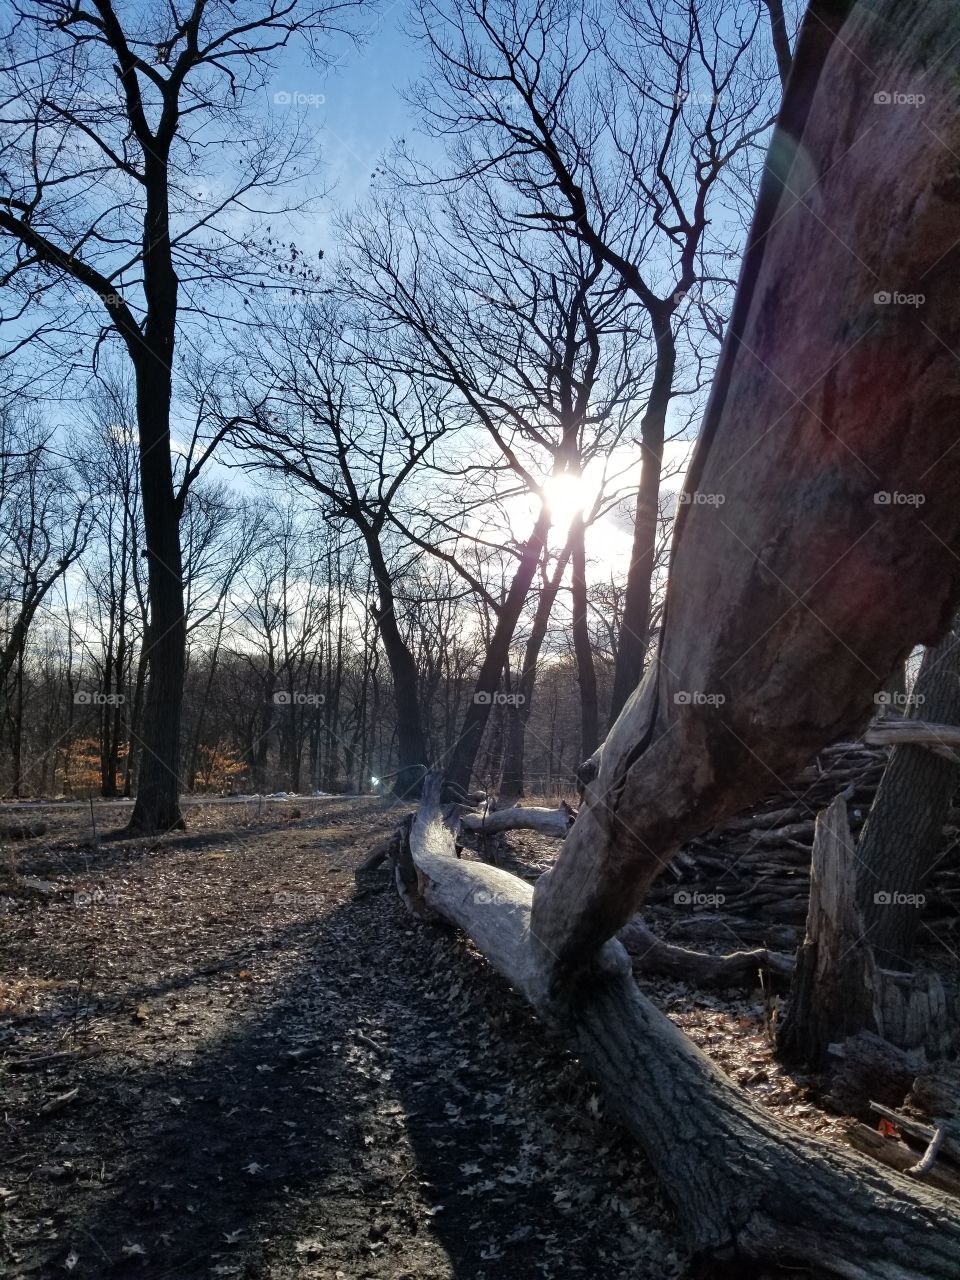 Sun Setting on a Fallen Tree